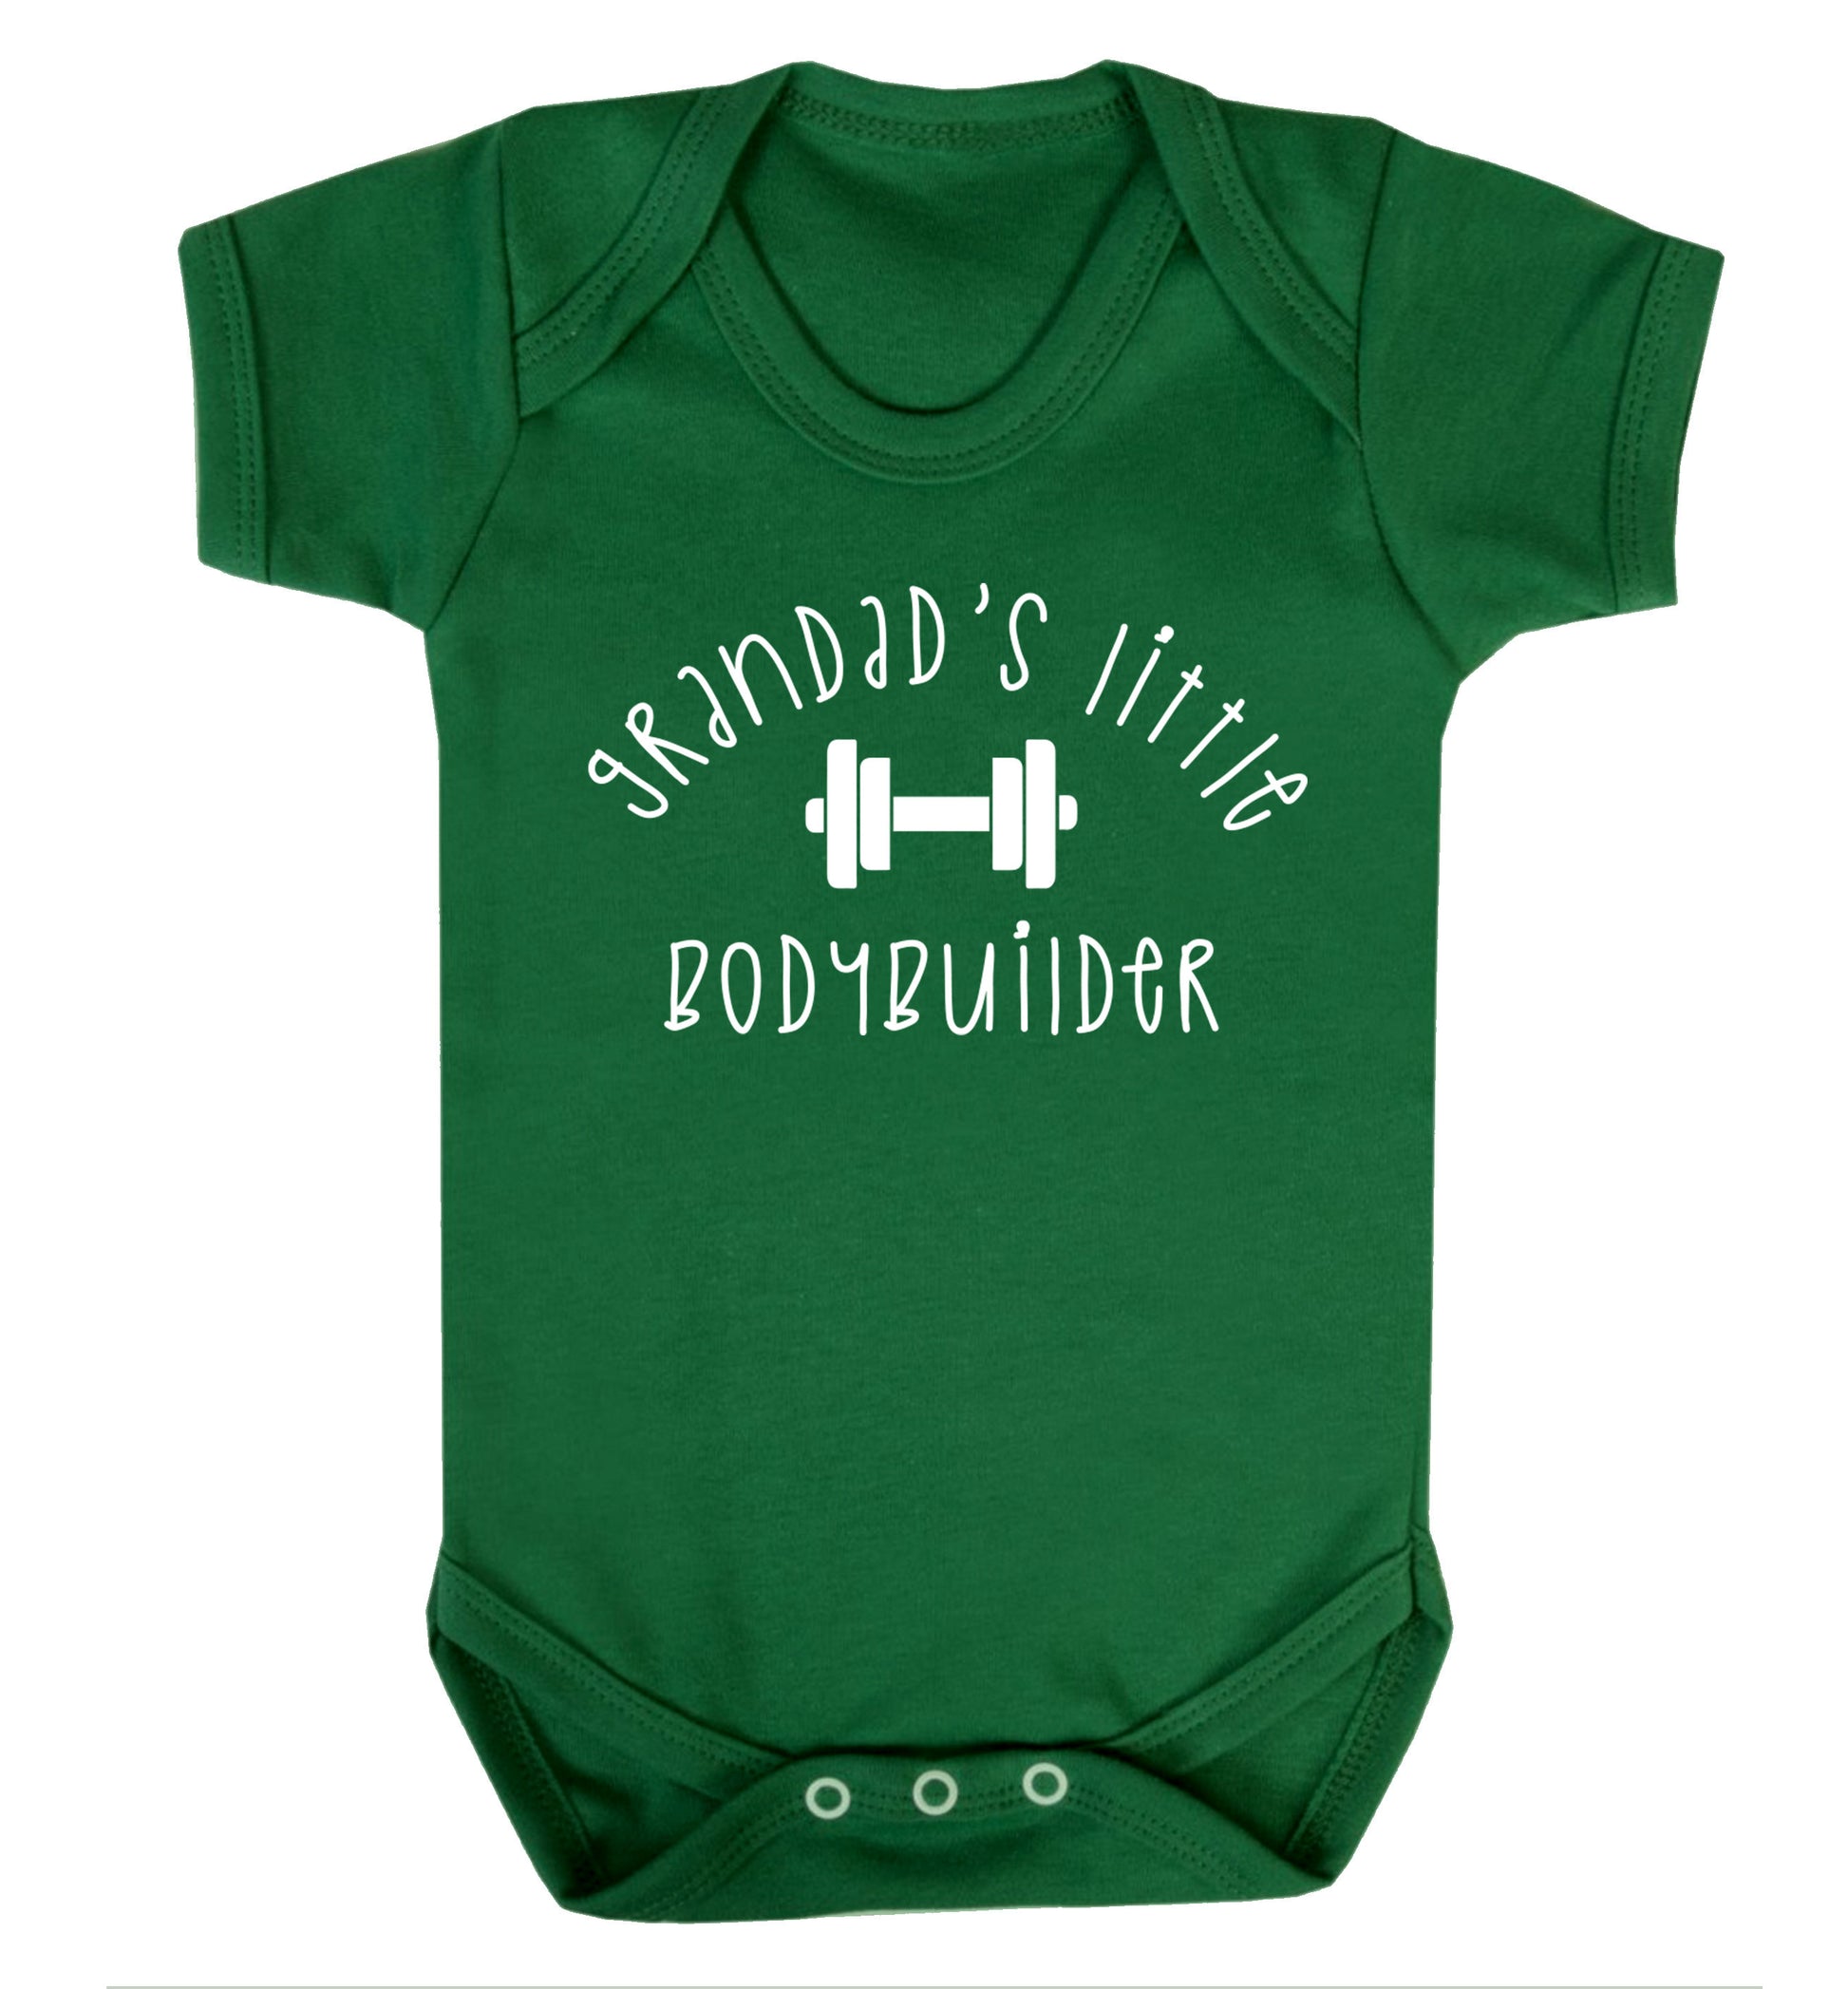 Grandad's little bodybuilder Baby Vest green 18-24 months